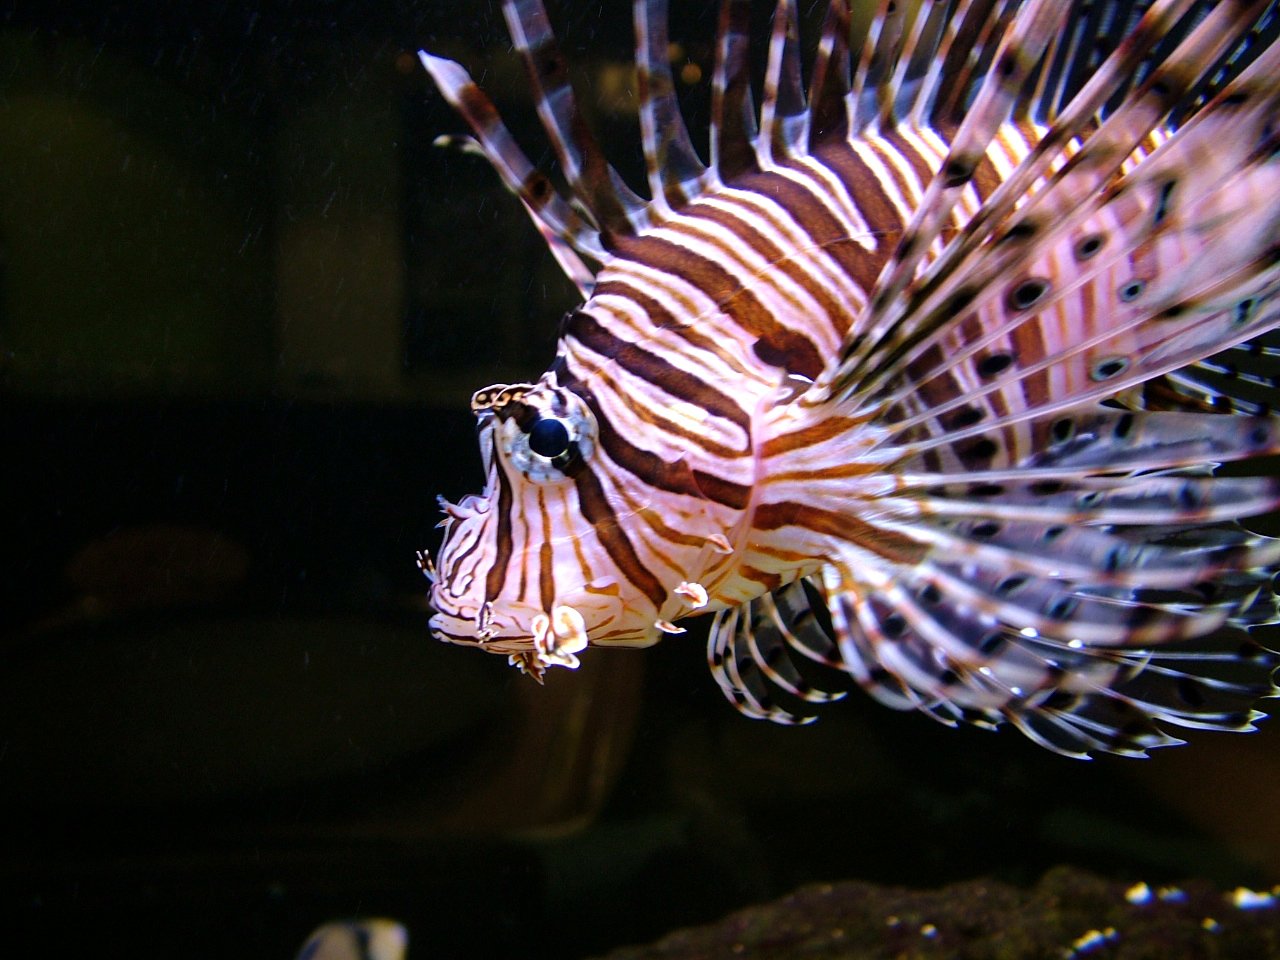 a white and black lionfish in an aquarium